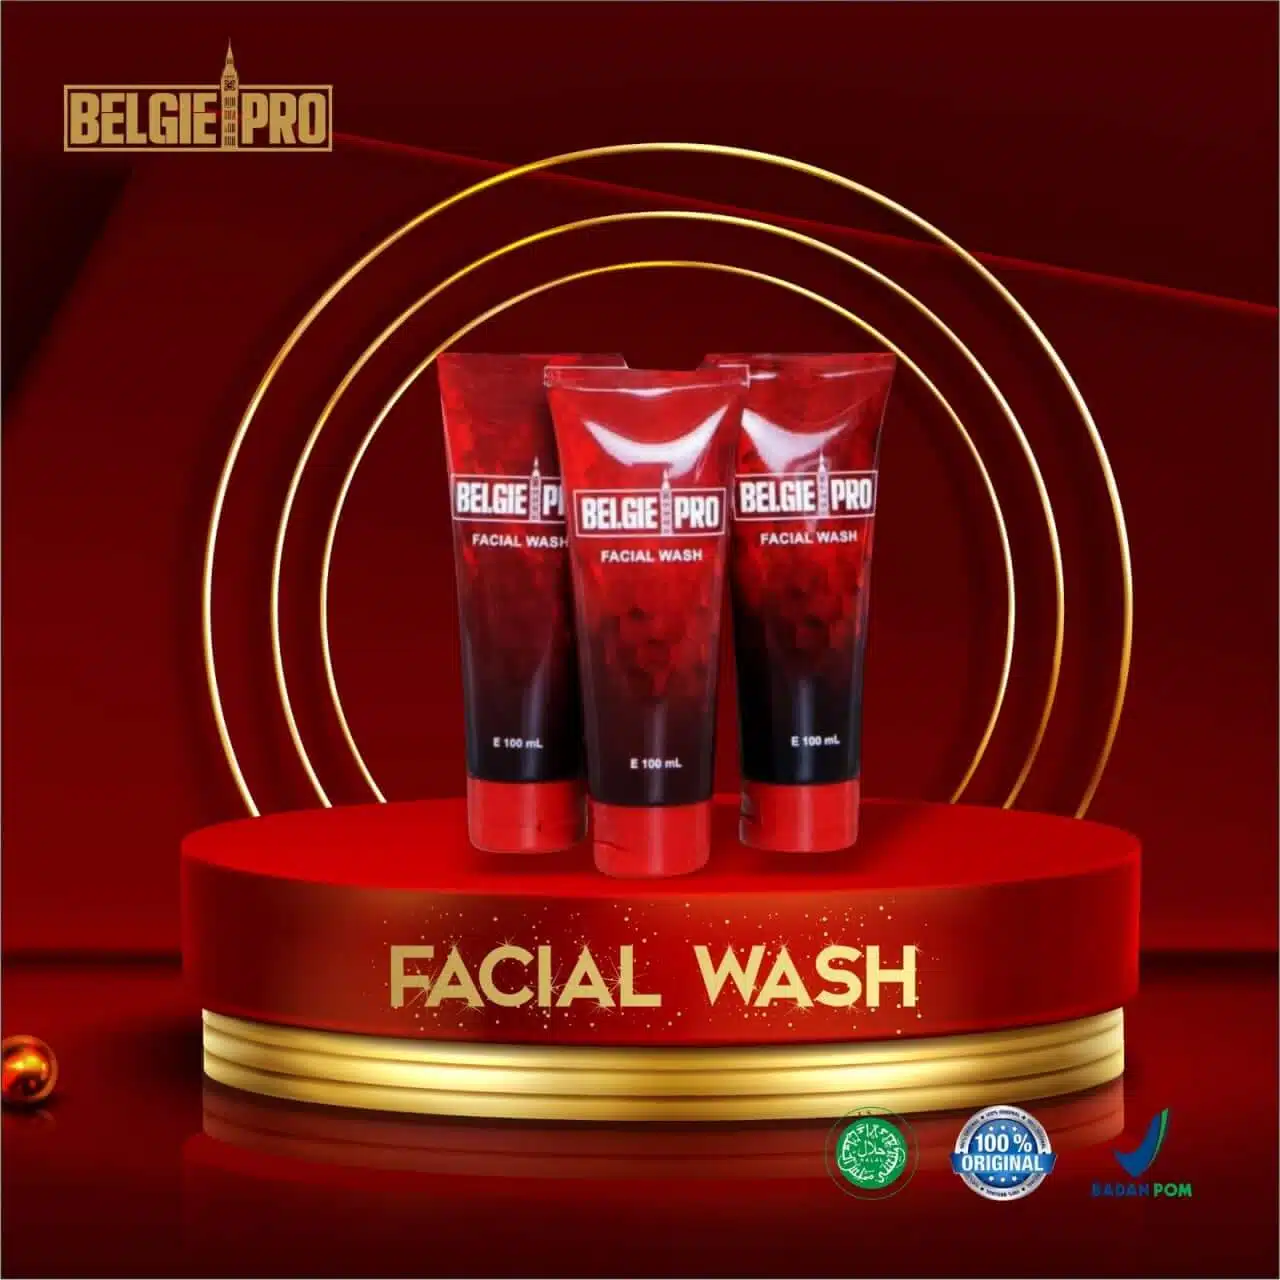 Mengungkap Manfaat Belgie Pro Facial Wash